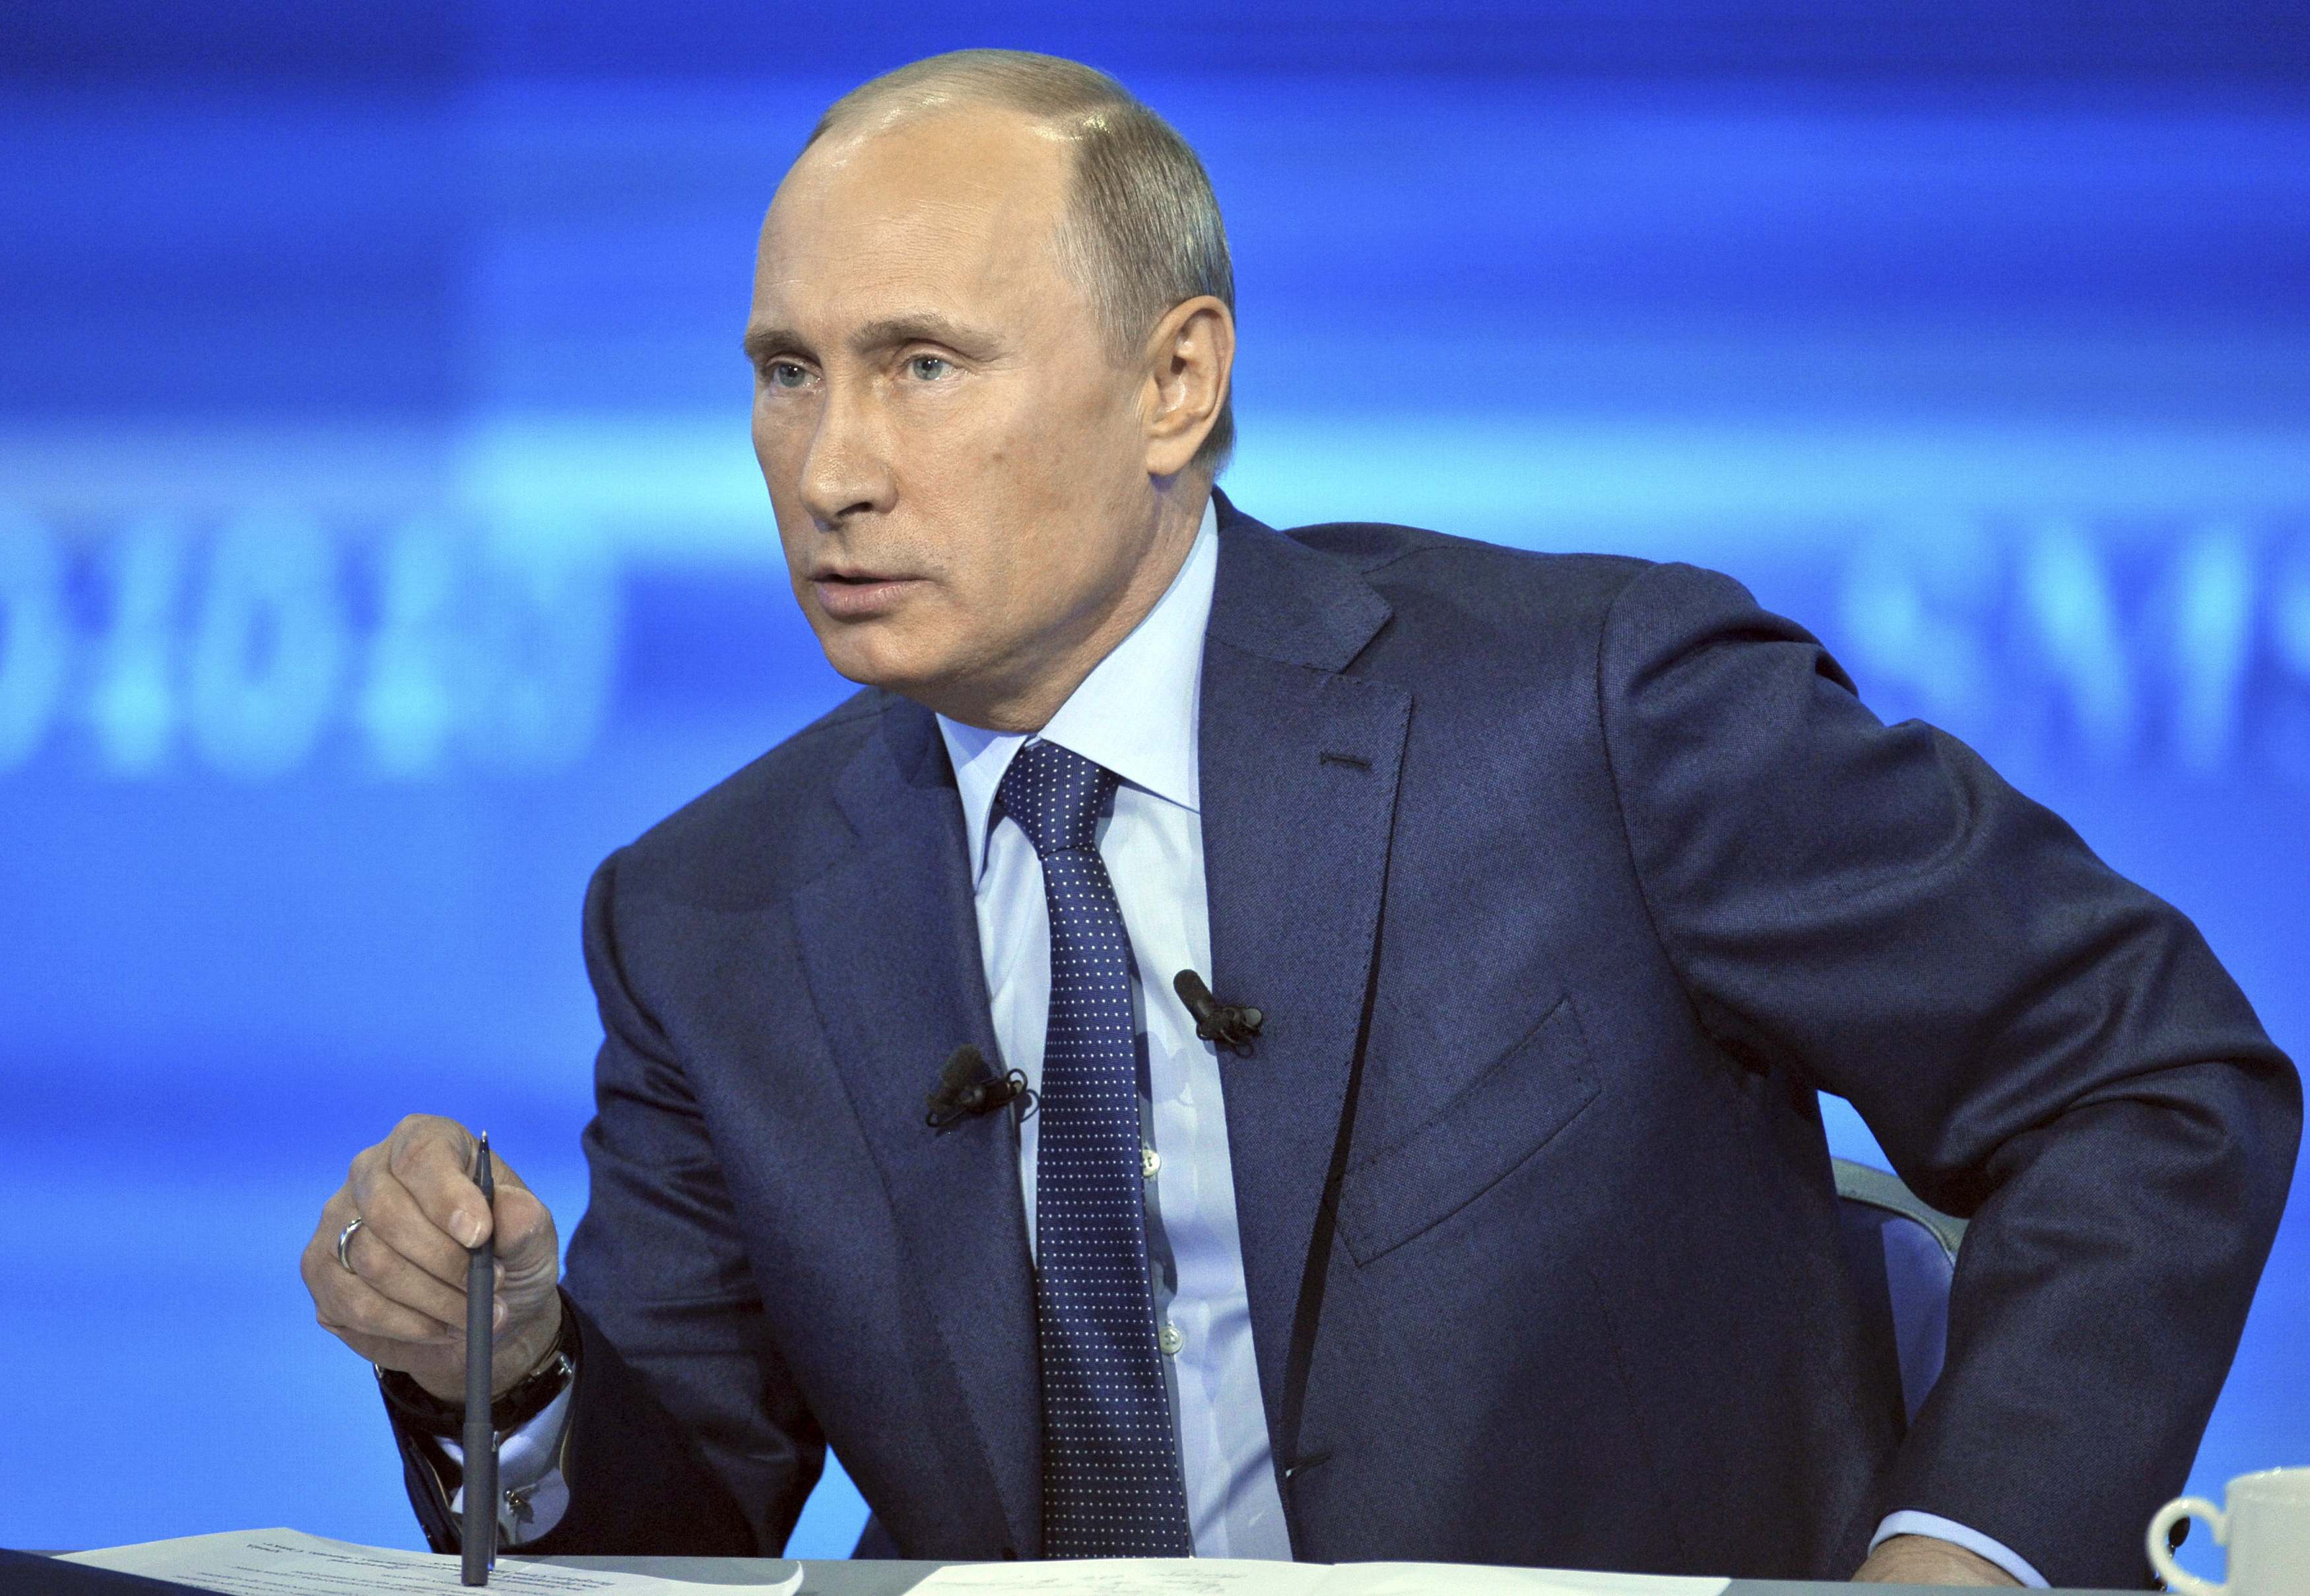 Πούτιν: Κανένα “σταλινικό στοιχείο” δεν υπάρχει στη σημερινή Ρωσία